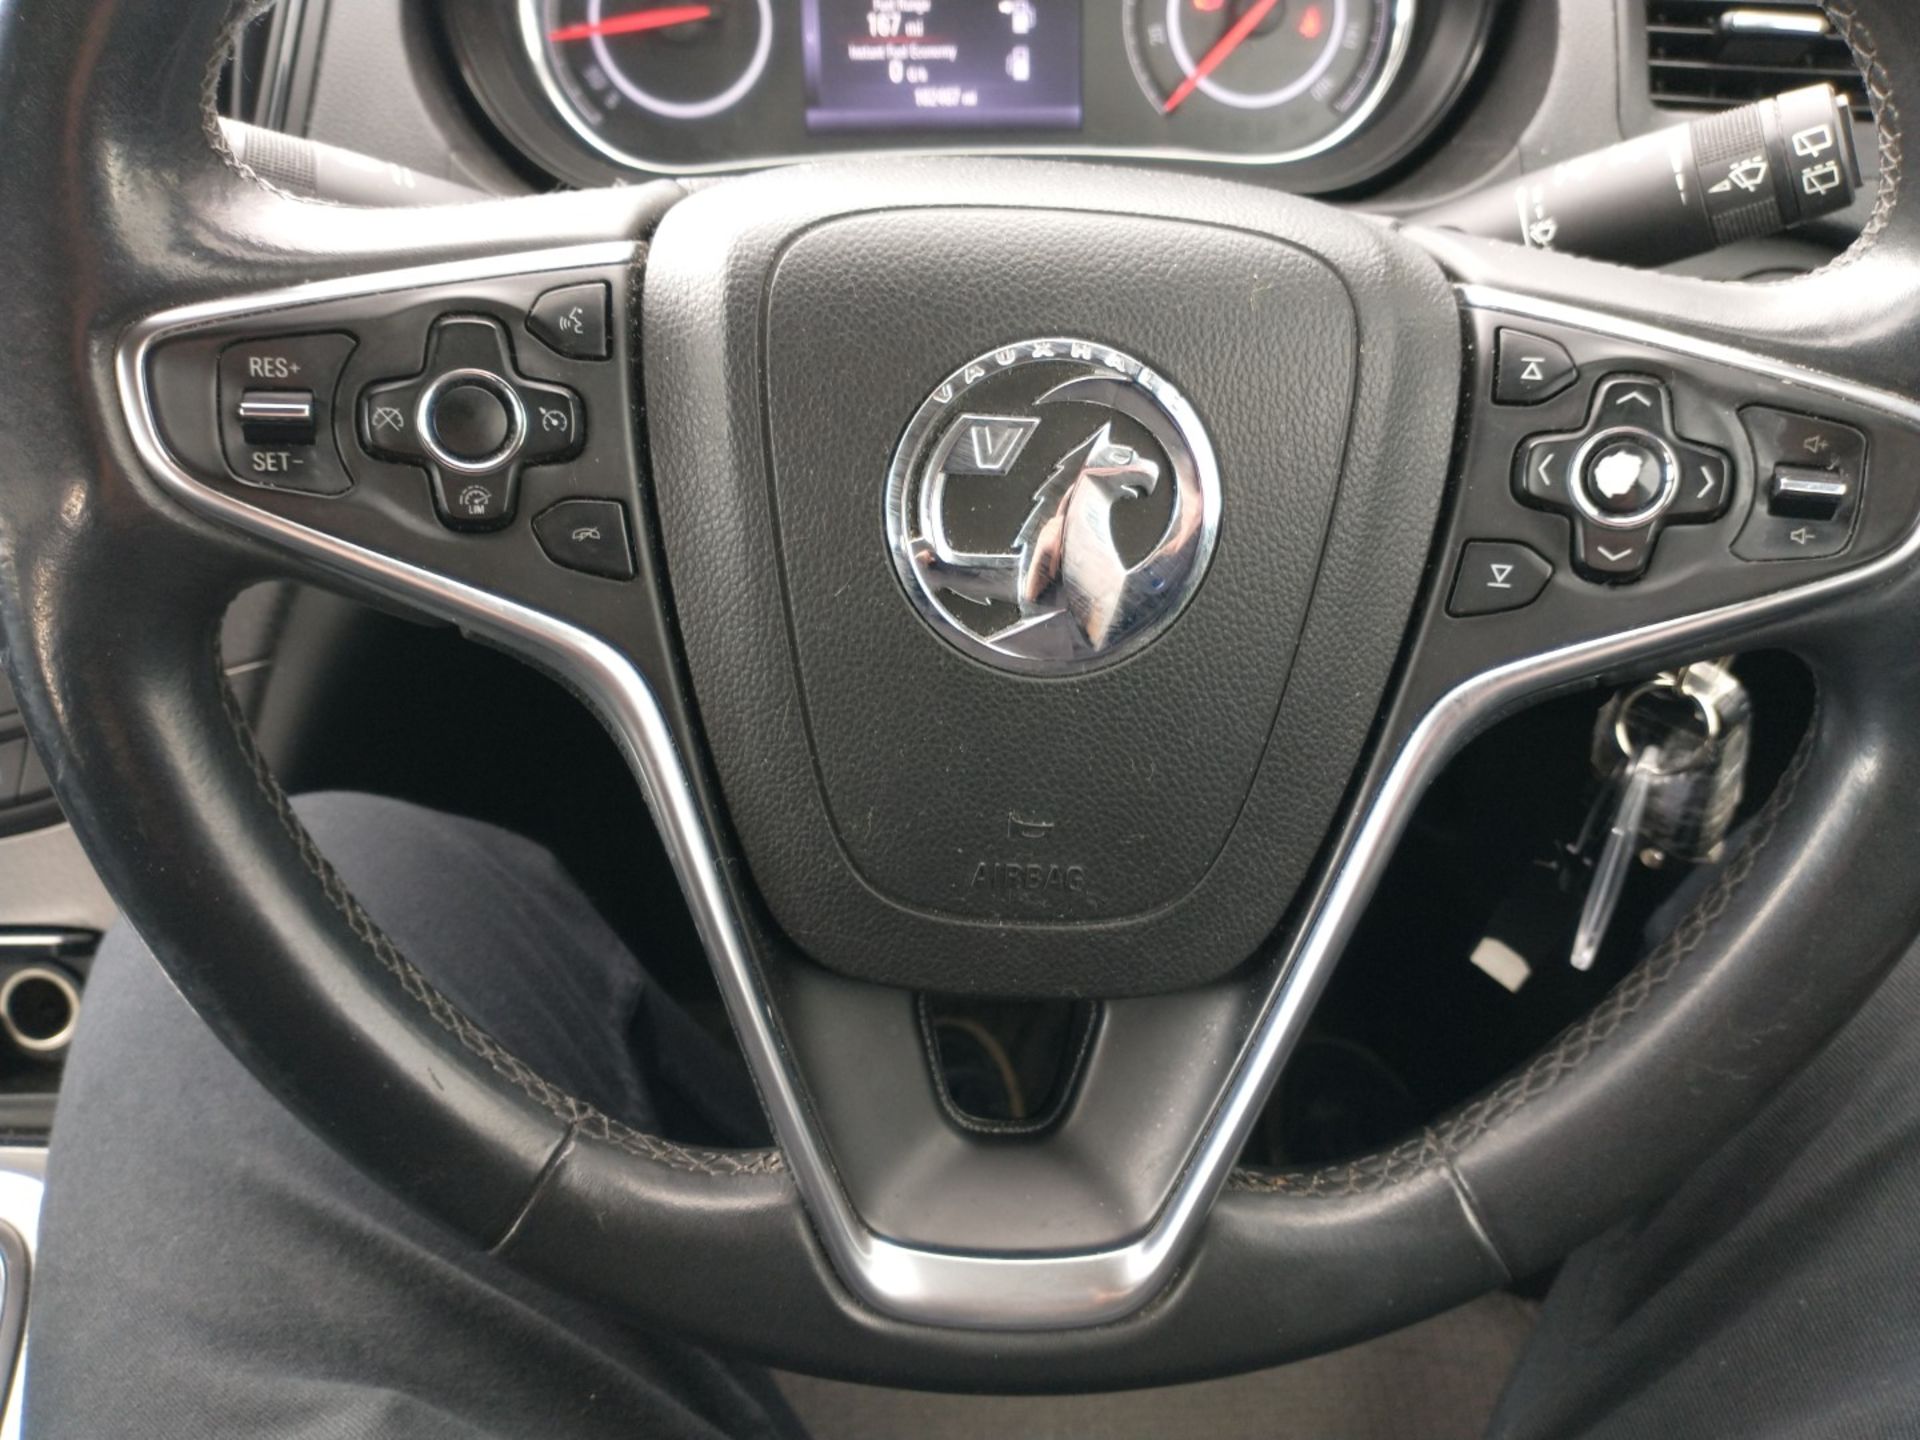 2014 Vauxhall Insignia 2.0 CDTI Design Nav 5 Door Hatchback - CL505 - NO VAT ON THE HAMMER - - Image 10 of 13